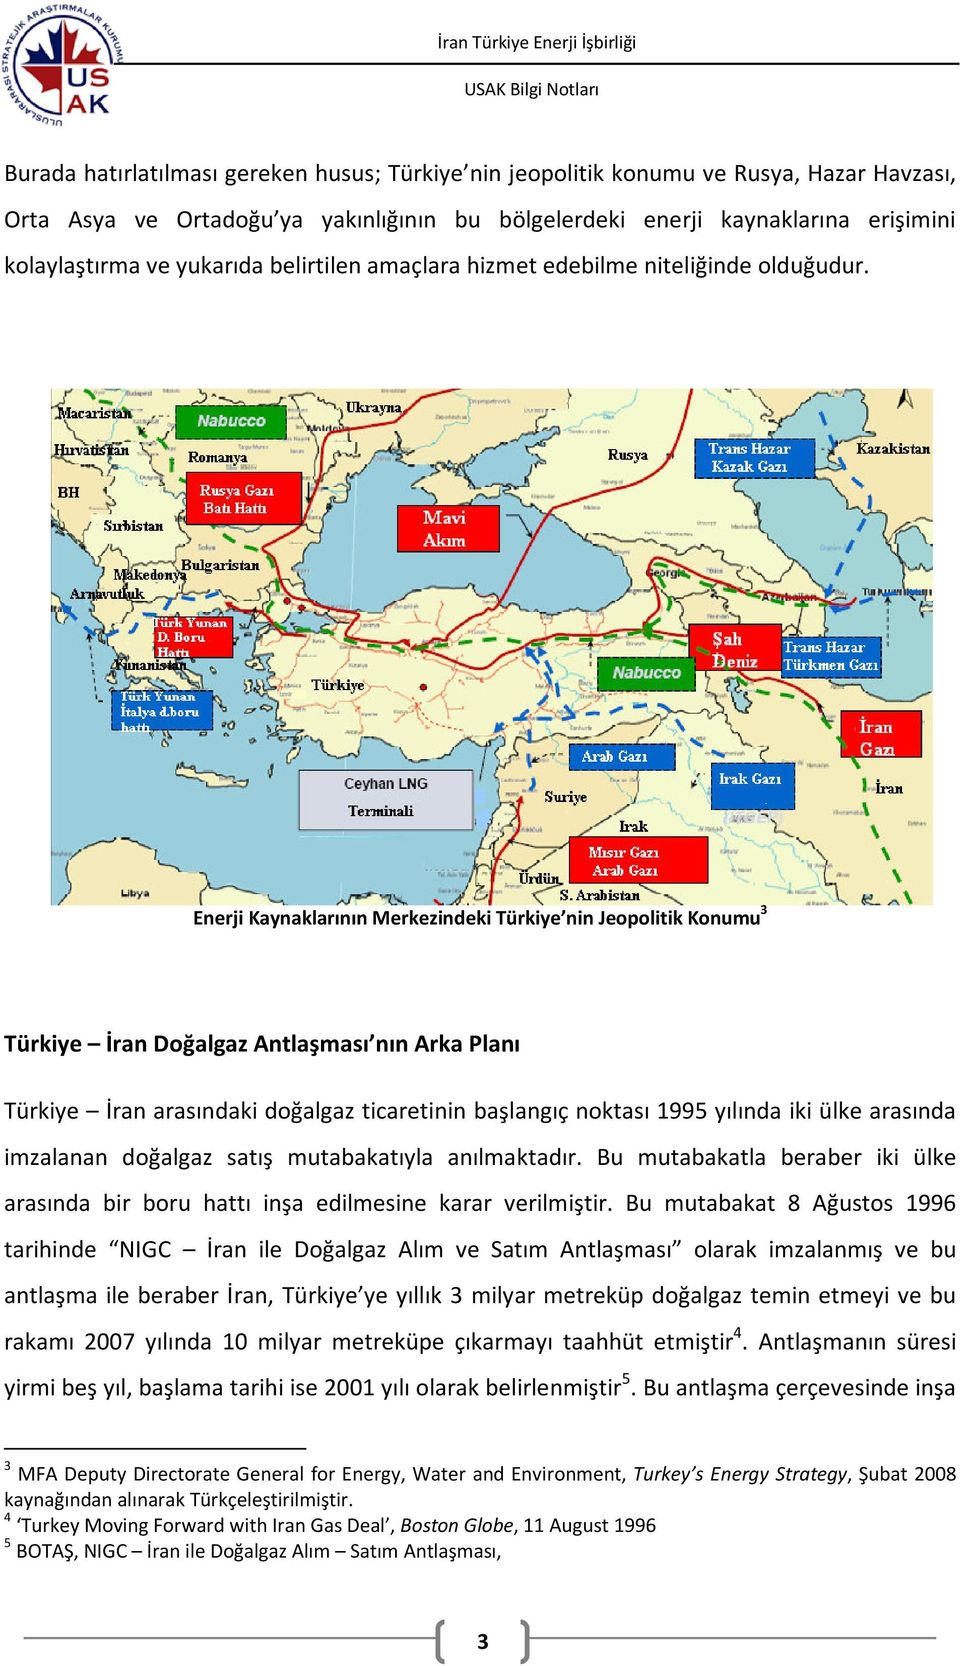 Enerji Kaynaklarının Merkezindeki Türkiye nin Jeopolitik Konumu 3 Türkiye İran Doğalgaz Antlaşması nın Arka Planı Türkiye İran arasındaki doğalgaz ticaretinin başlangıç noktası 1995 yılında iki ülke